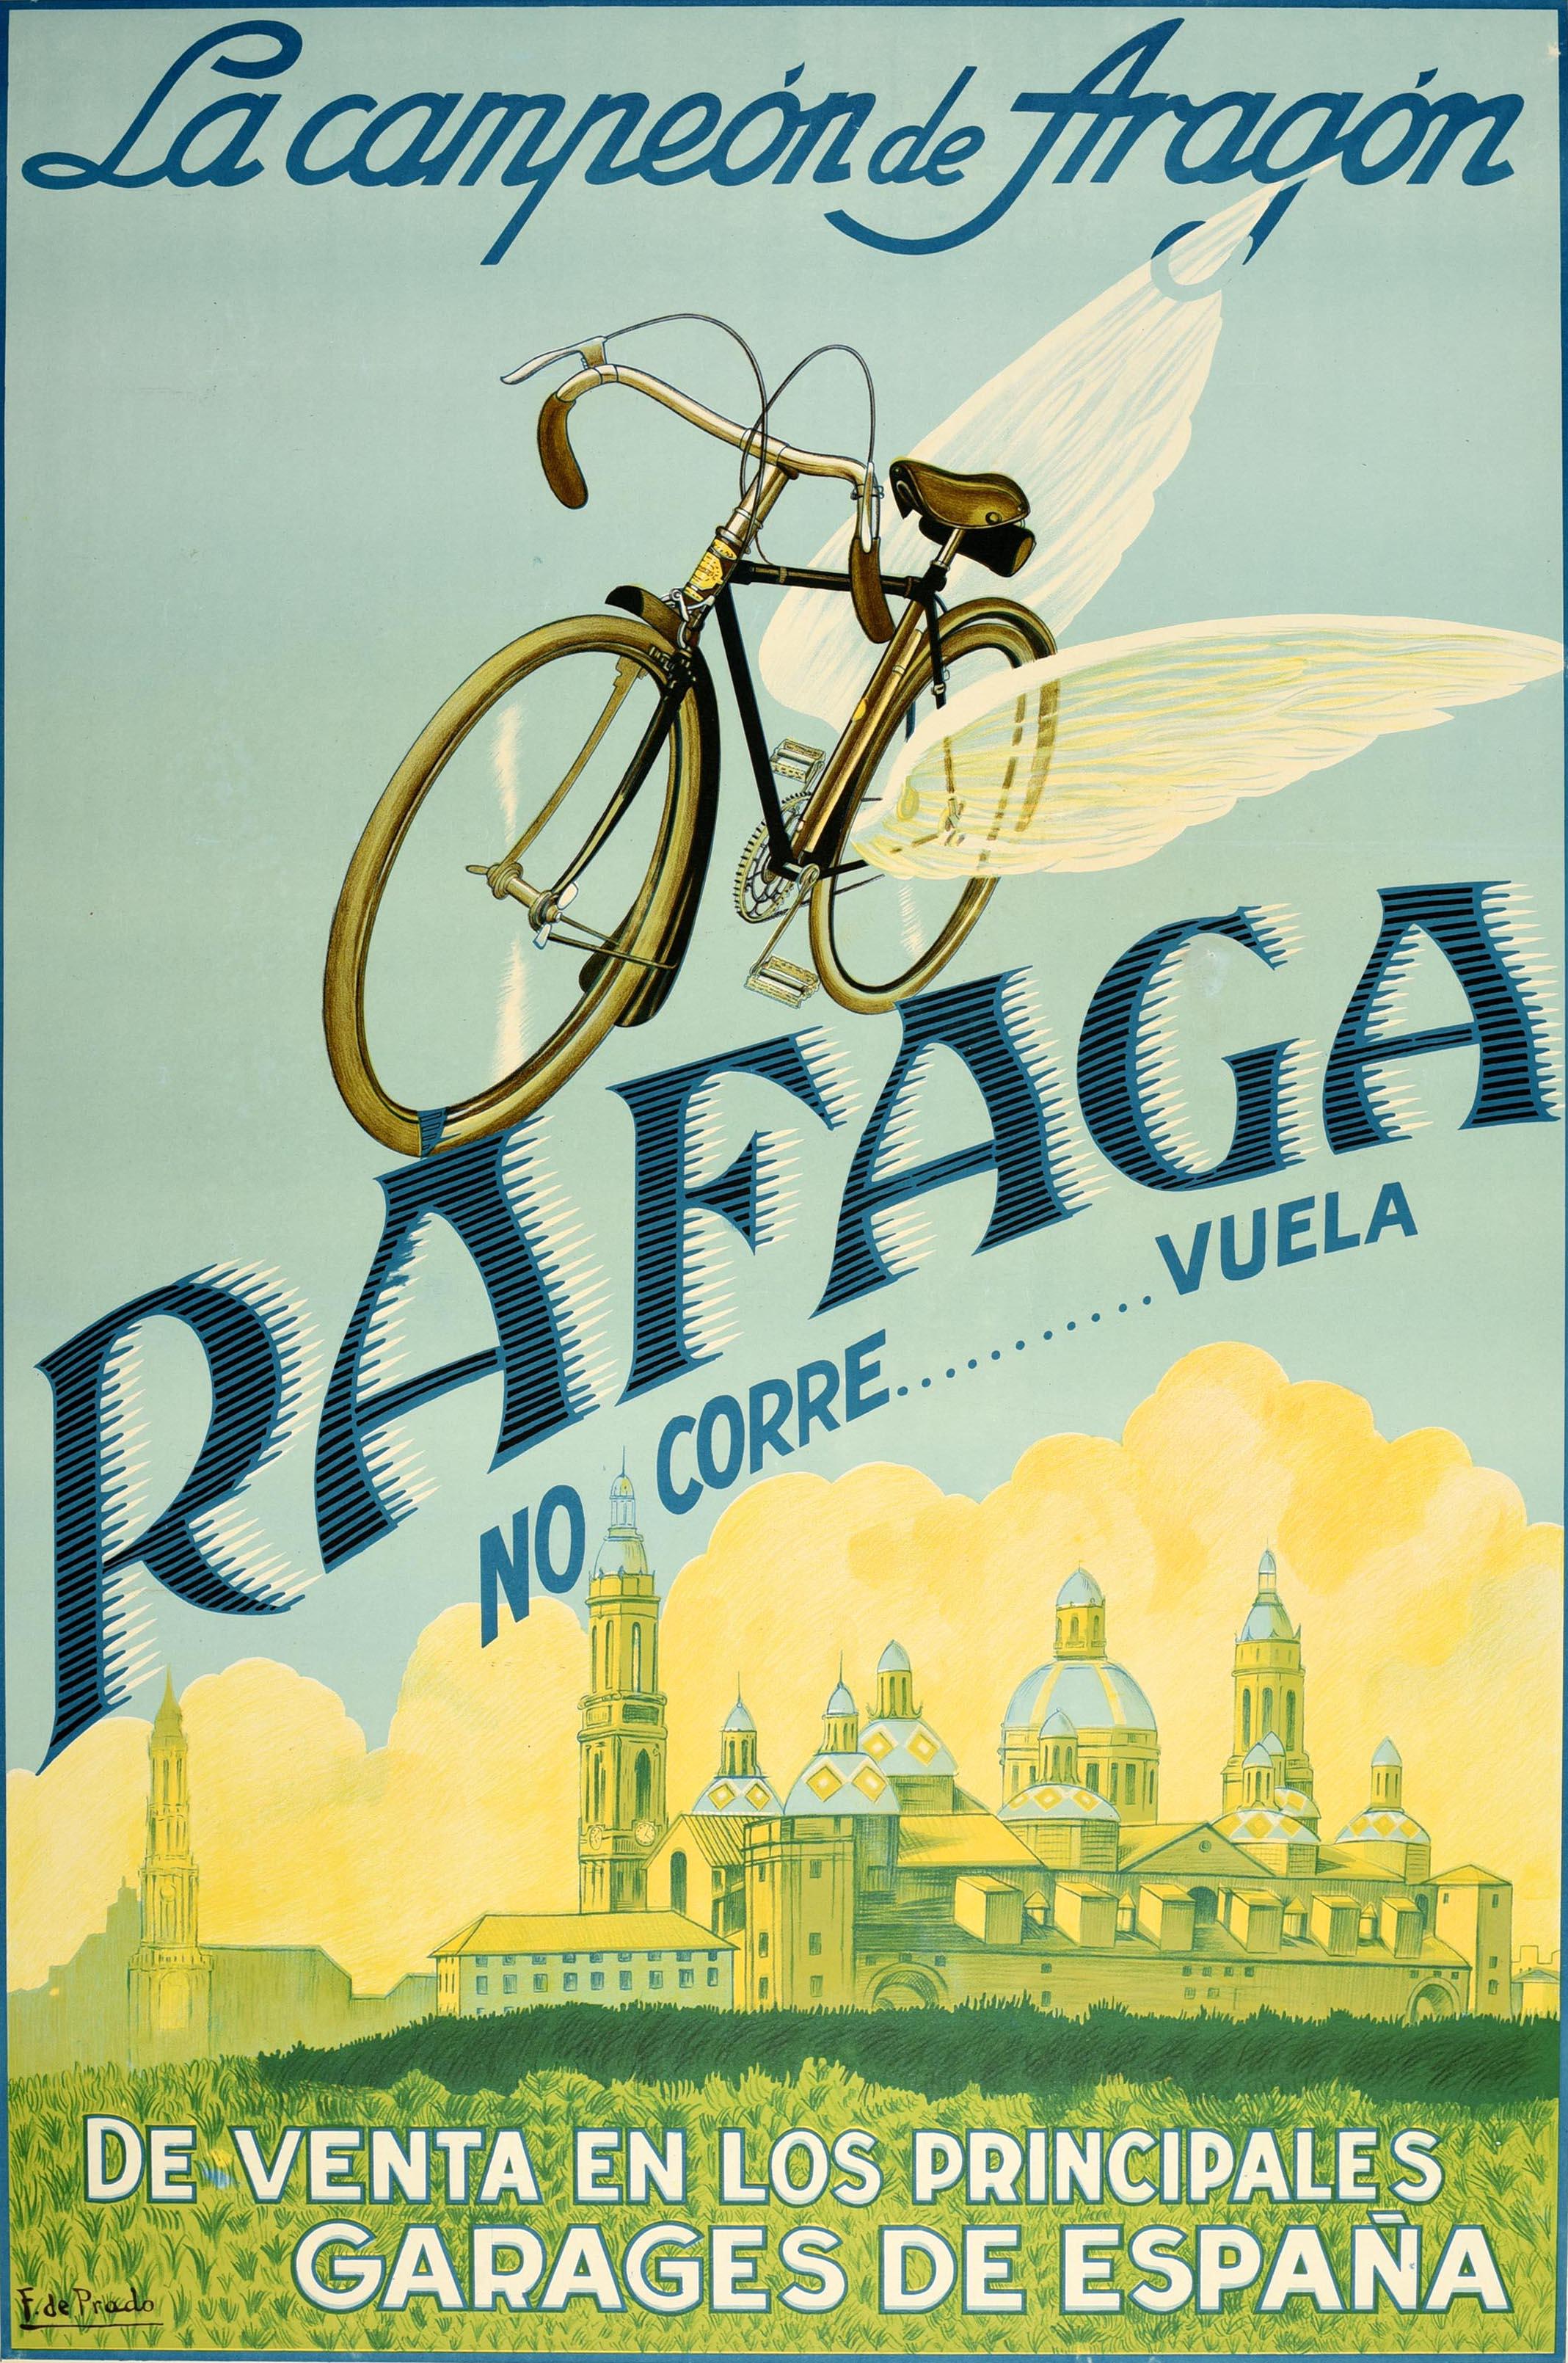 Original vintage bicycle advertising poster for La campeon de Aragon Rafaga No Corre ... Vuela de venta en los principales garages de Espagna / The champion of Aragon Don't Run...Fly - For sale in the main garages of Spain. Great design depicting a